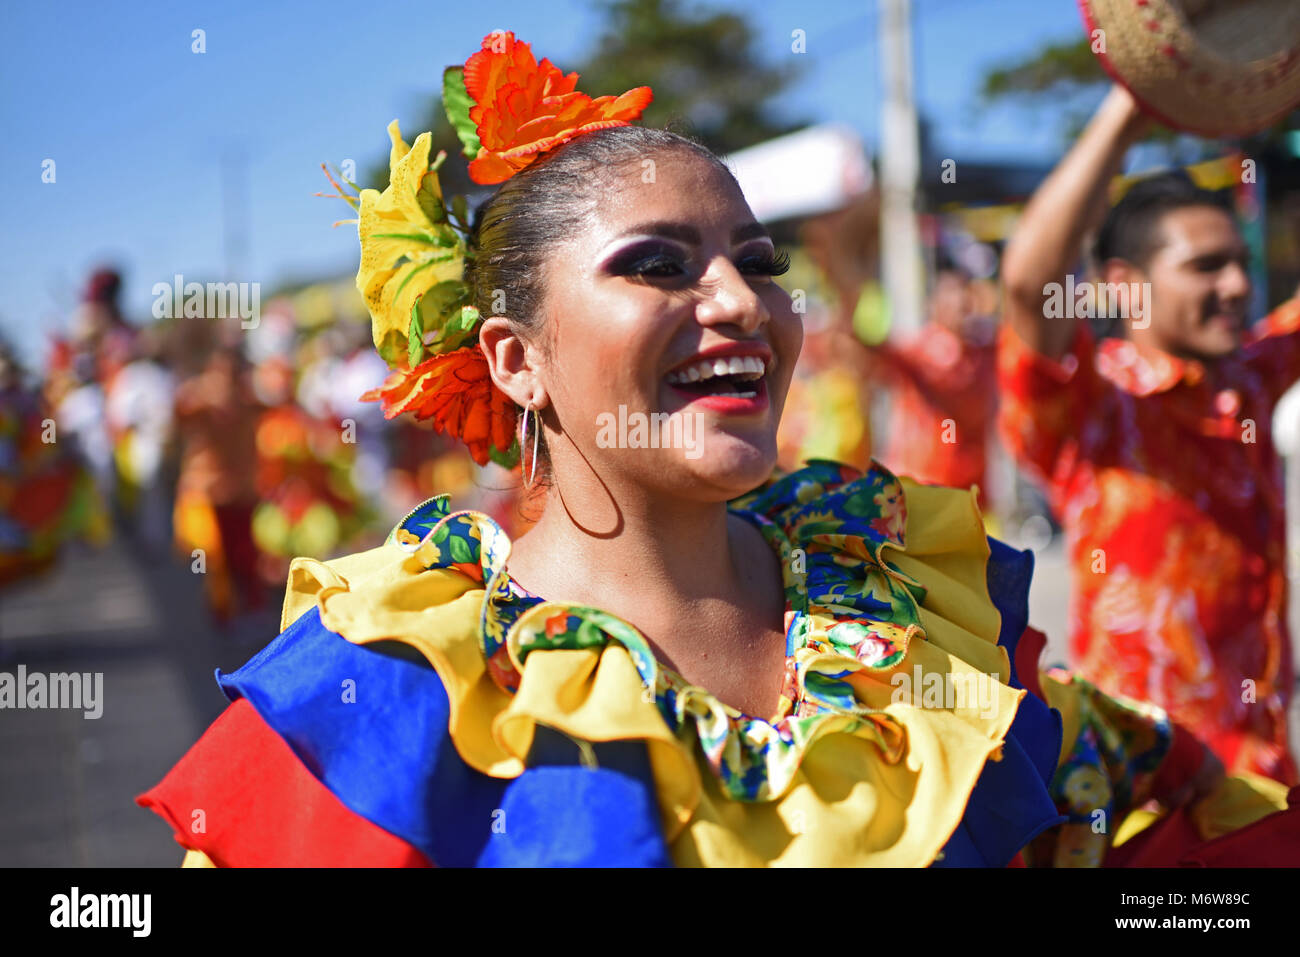 Carnevale spagnolo immagini e fotografie stock ad alta risoluzione - Alamy